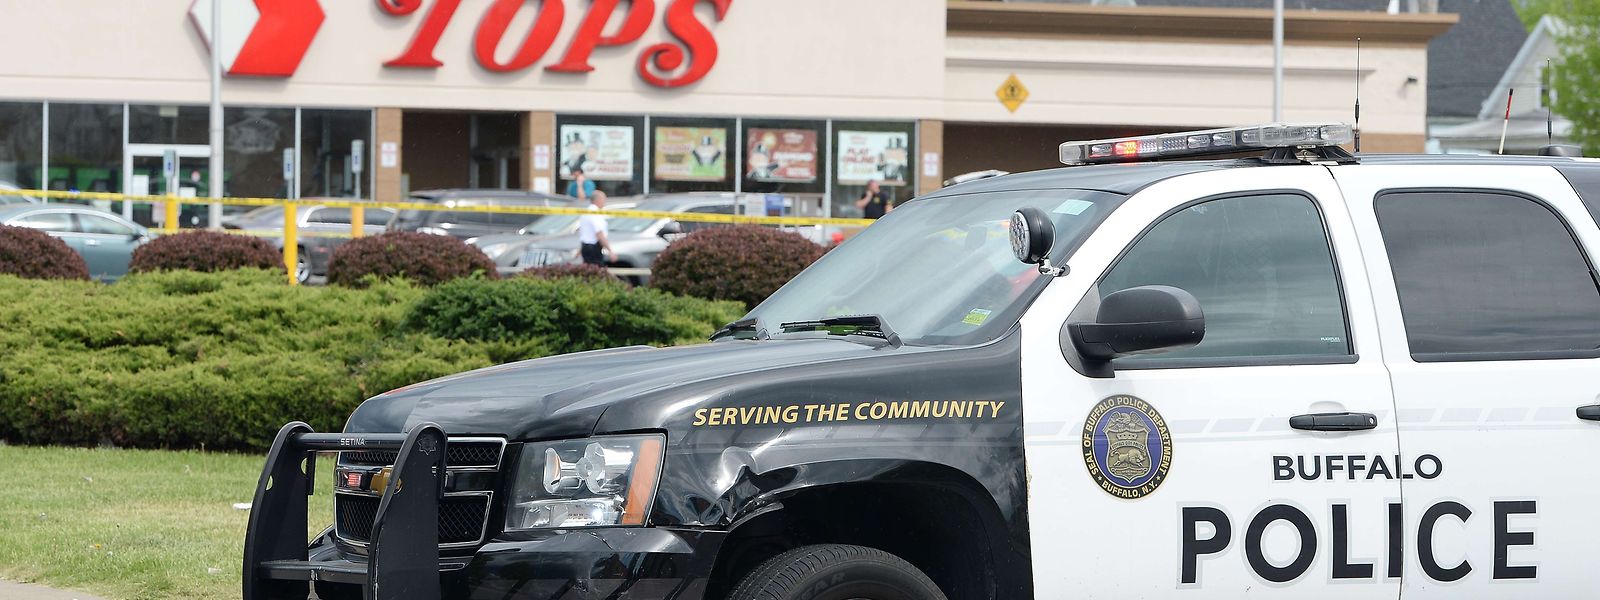 Ein 18-jähriger Weißer hat in der Stadt Buffalo das Feuer in einem vor allem von Schwarzen besuchten Supermarkt eröffnet und zehn Menschen getötet.